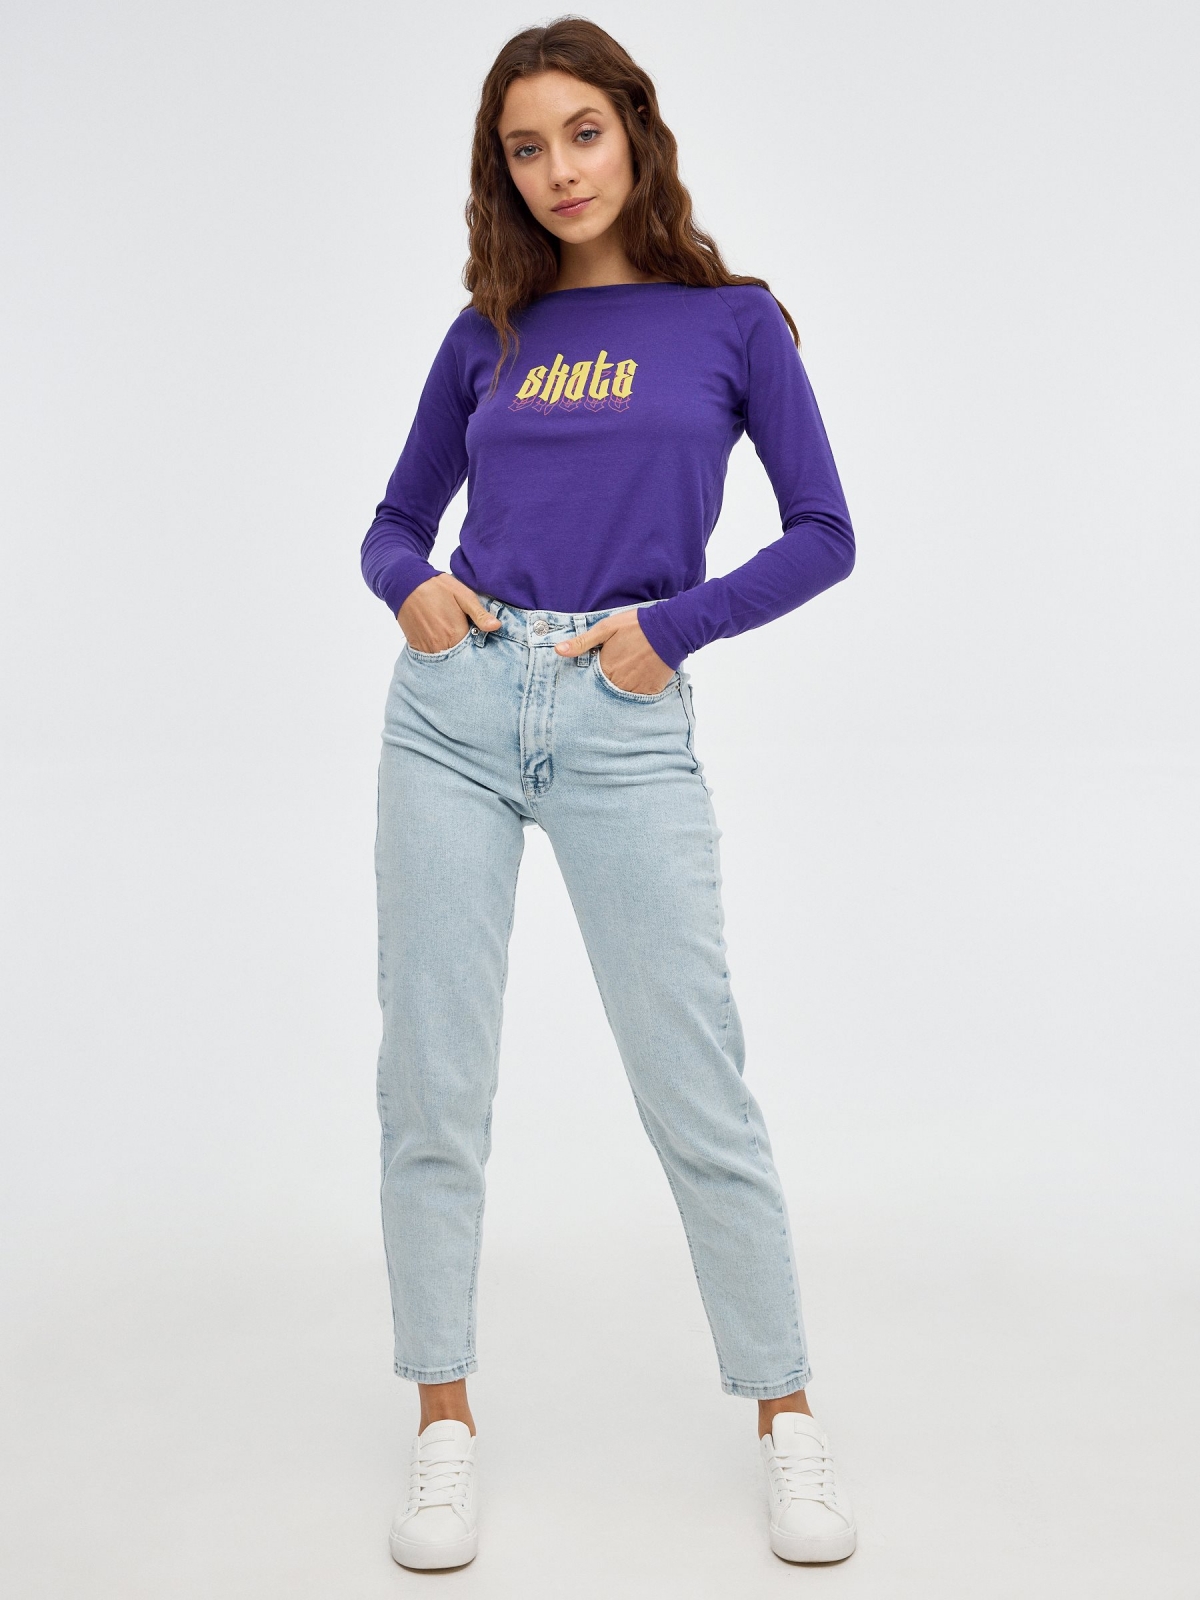 T-shirt de barco Skate violeta vista geral frontal